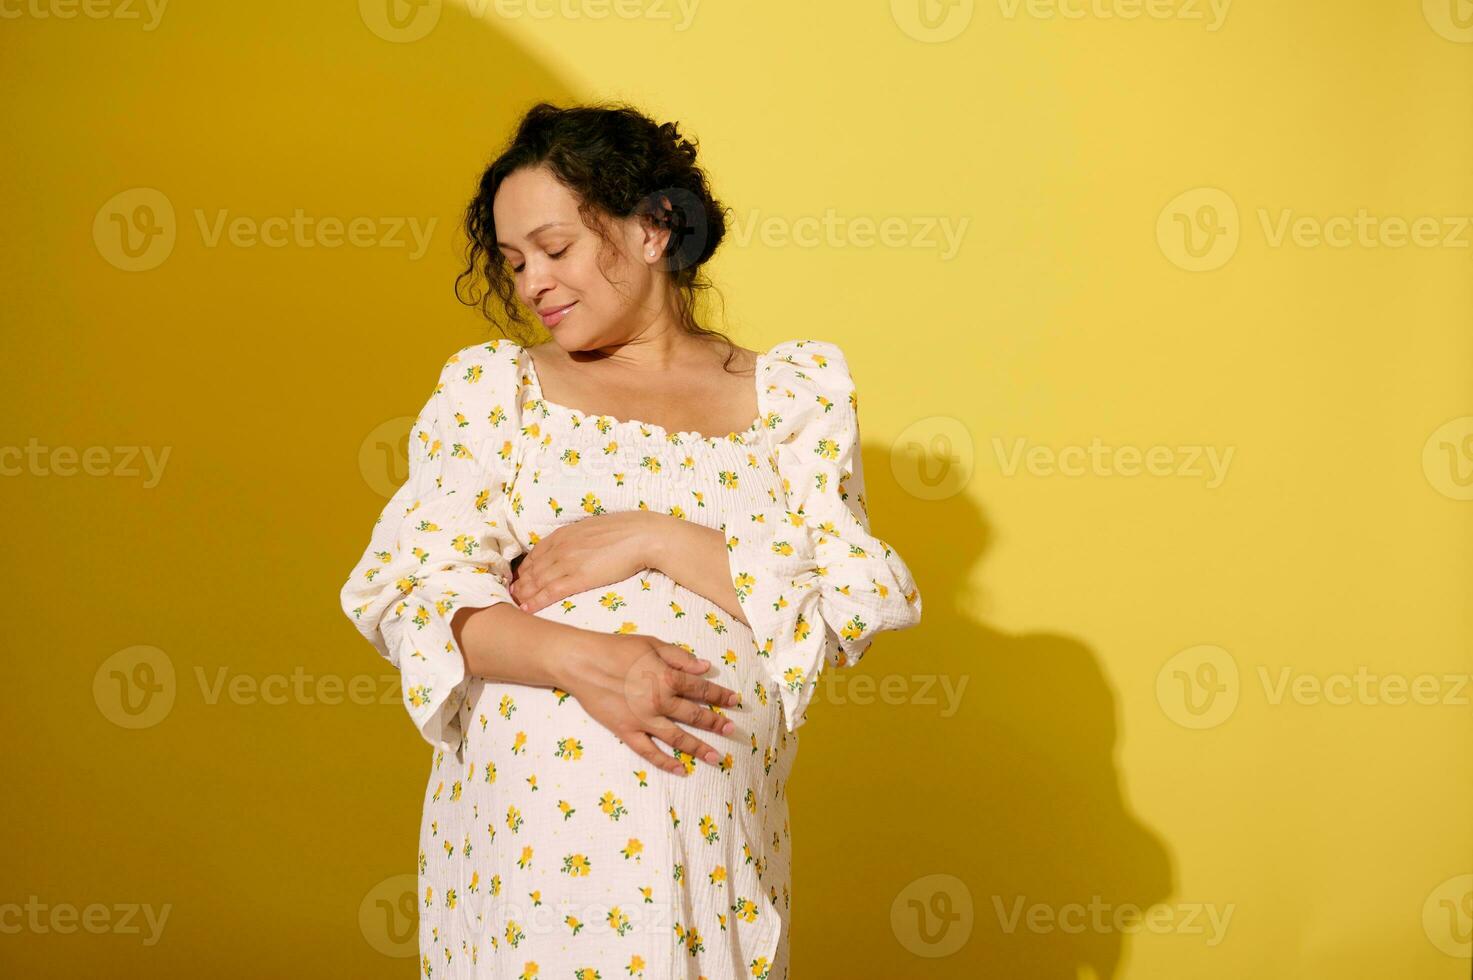 härlig gravid kvinna försiktigt strök och kramas henne stor mage, isolerat över gul studio bakgrund foto